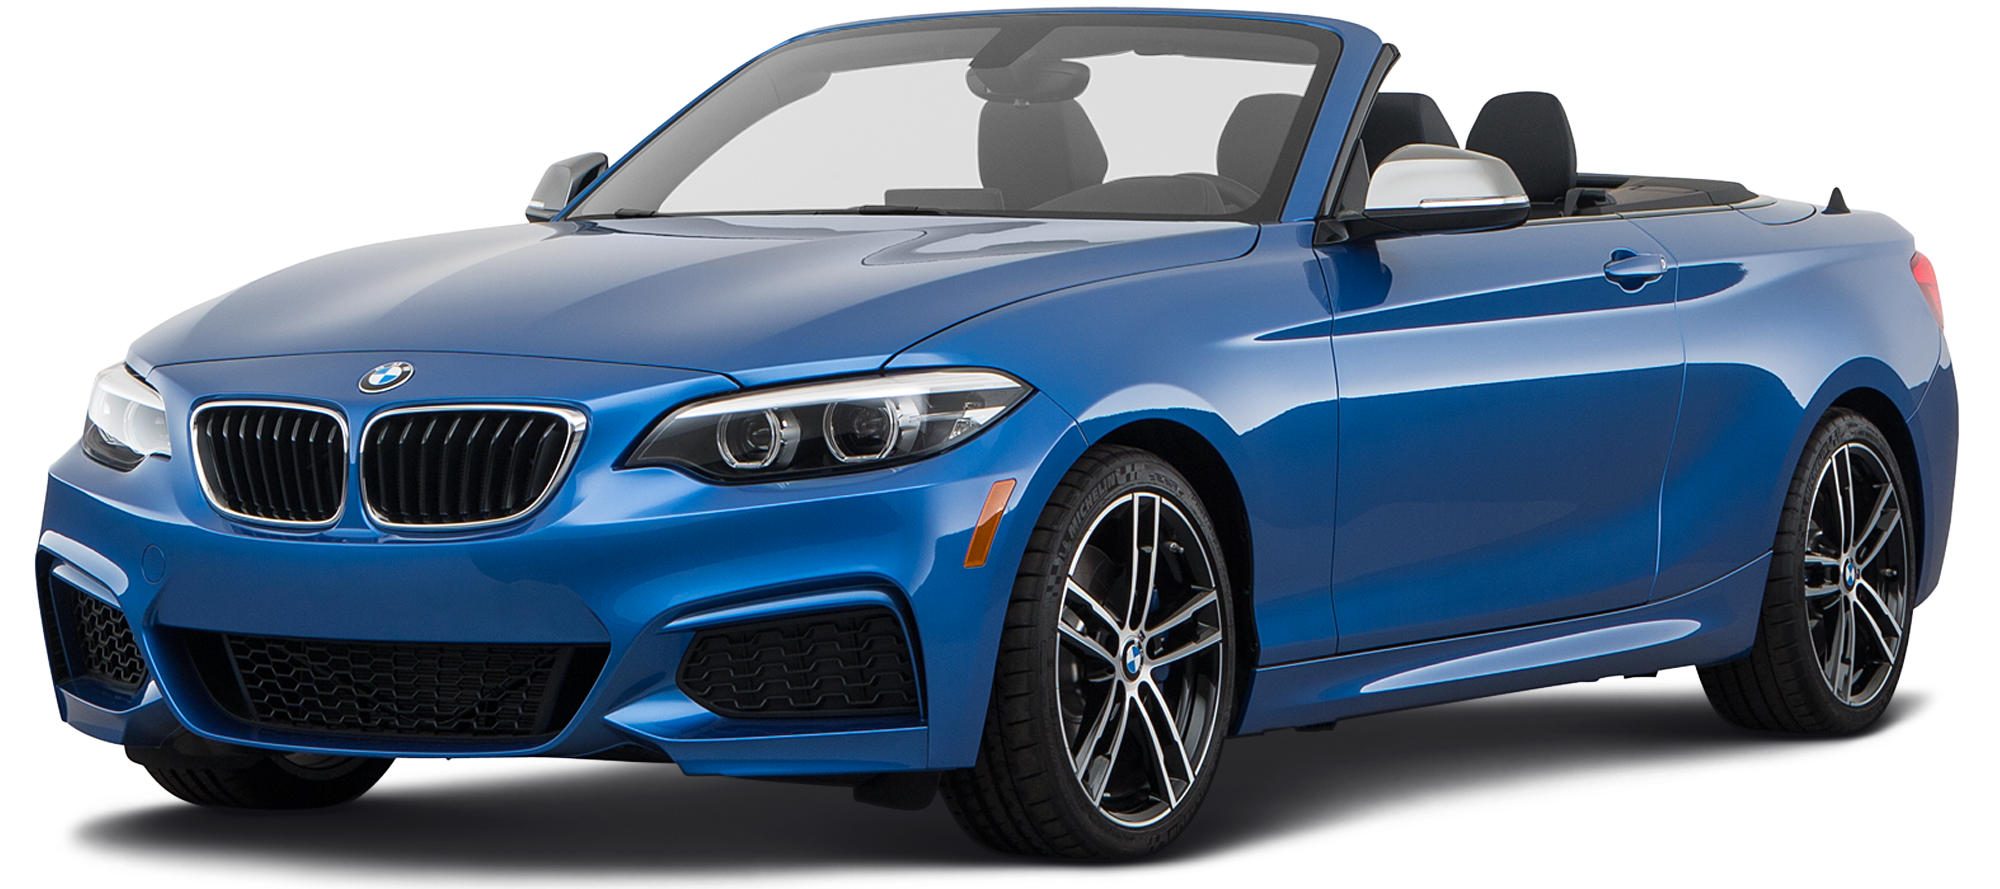 2019 BMW M240i Incentives, Specials & Offers in Monrovia CA